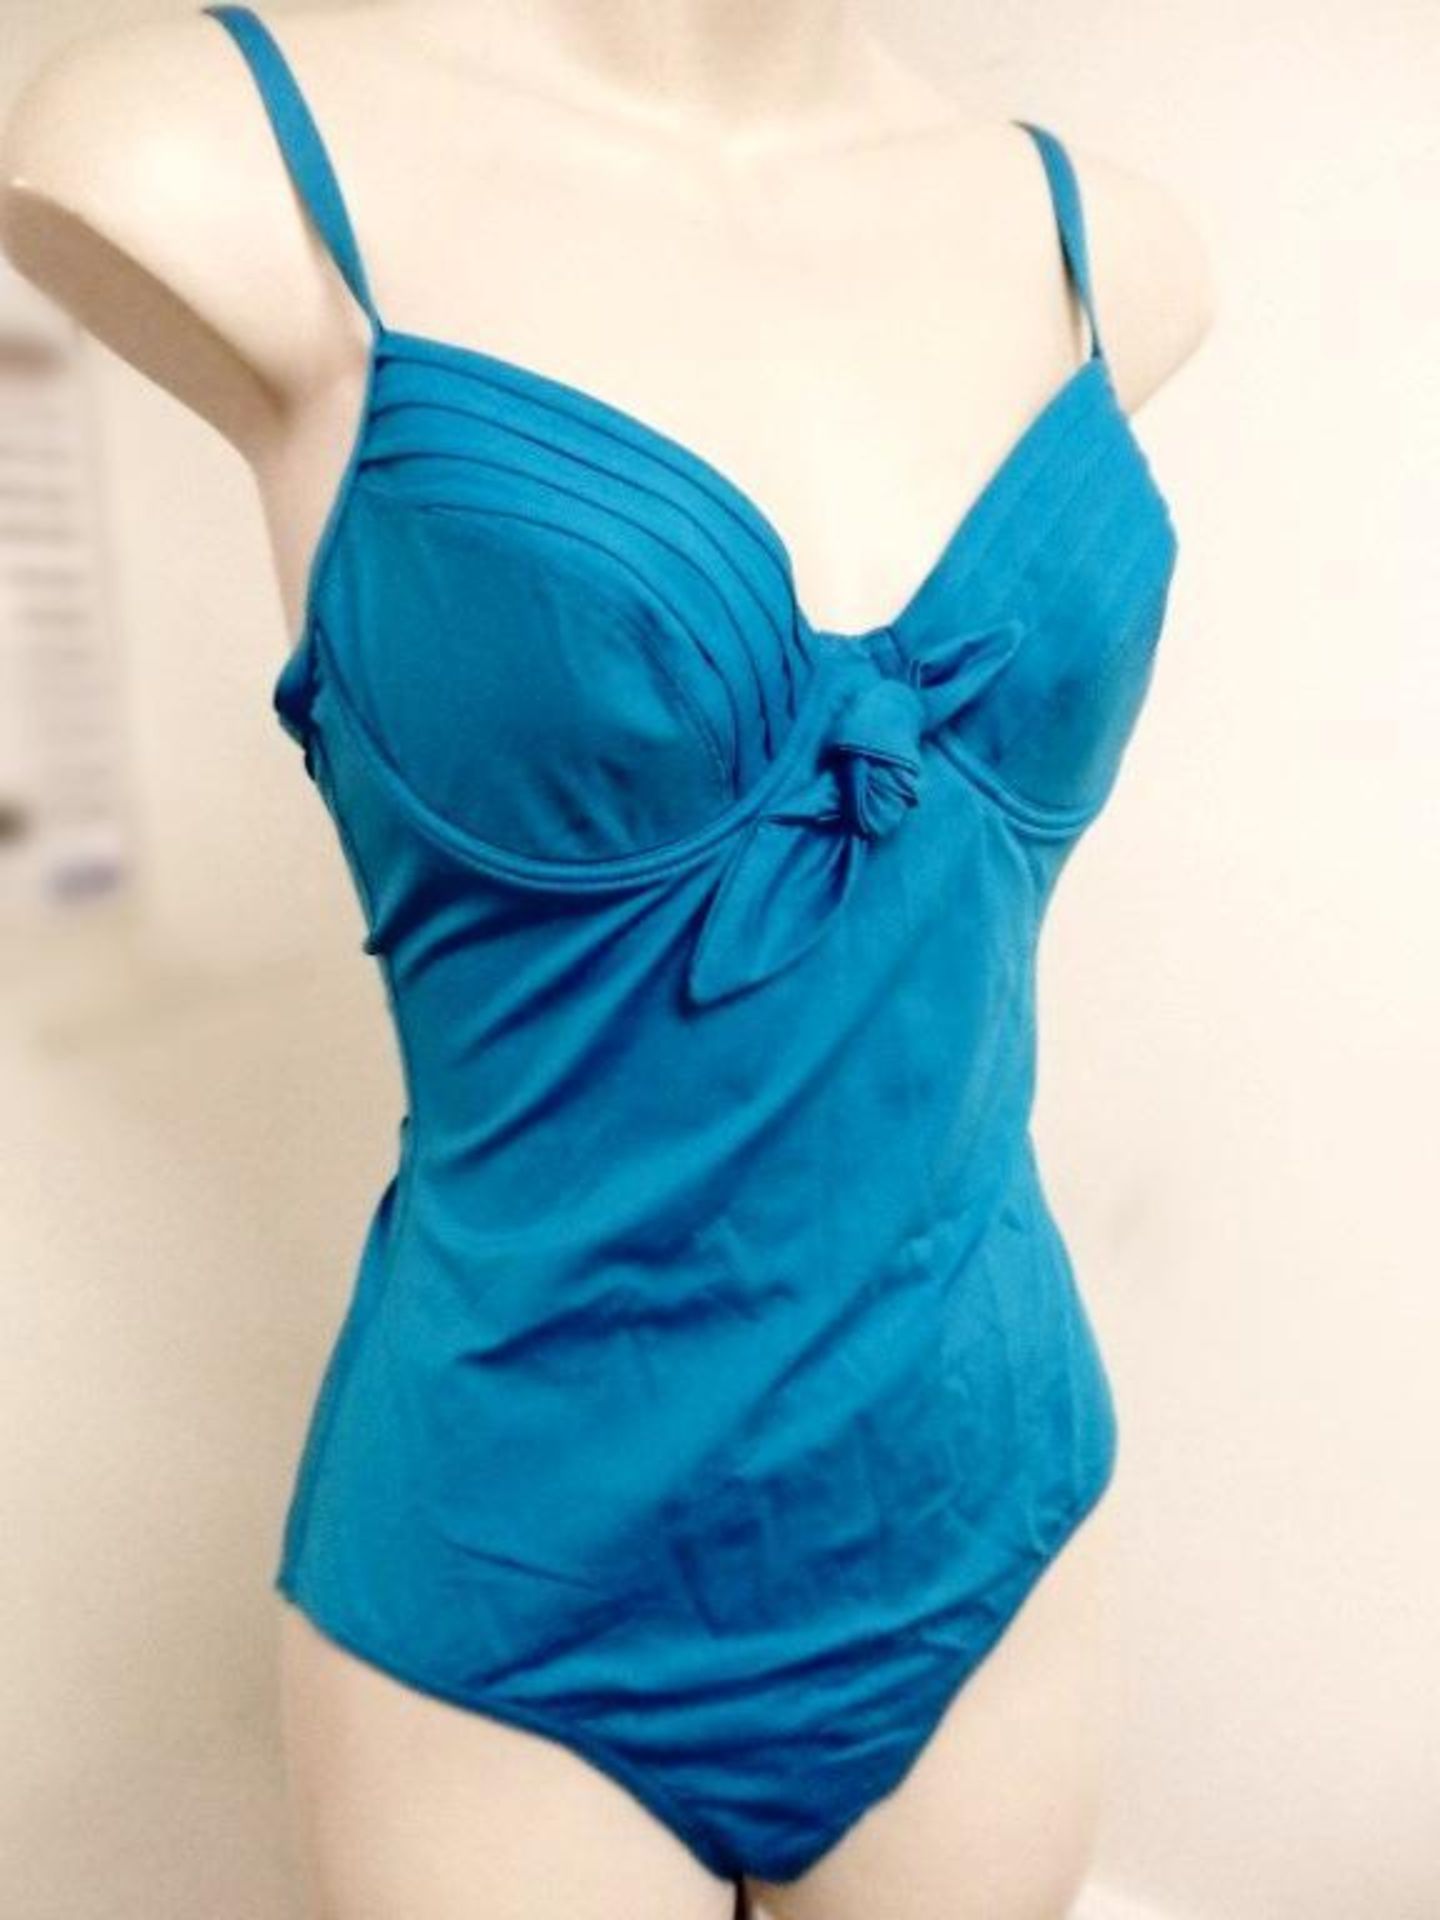 1 x Rasurel - Turquoise -Touquet balconnet Swimsuit - R20232 - Size 2C - UK 32 - Fr 85 - EU/Int 70 - Image 2 of 9